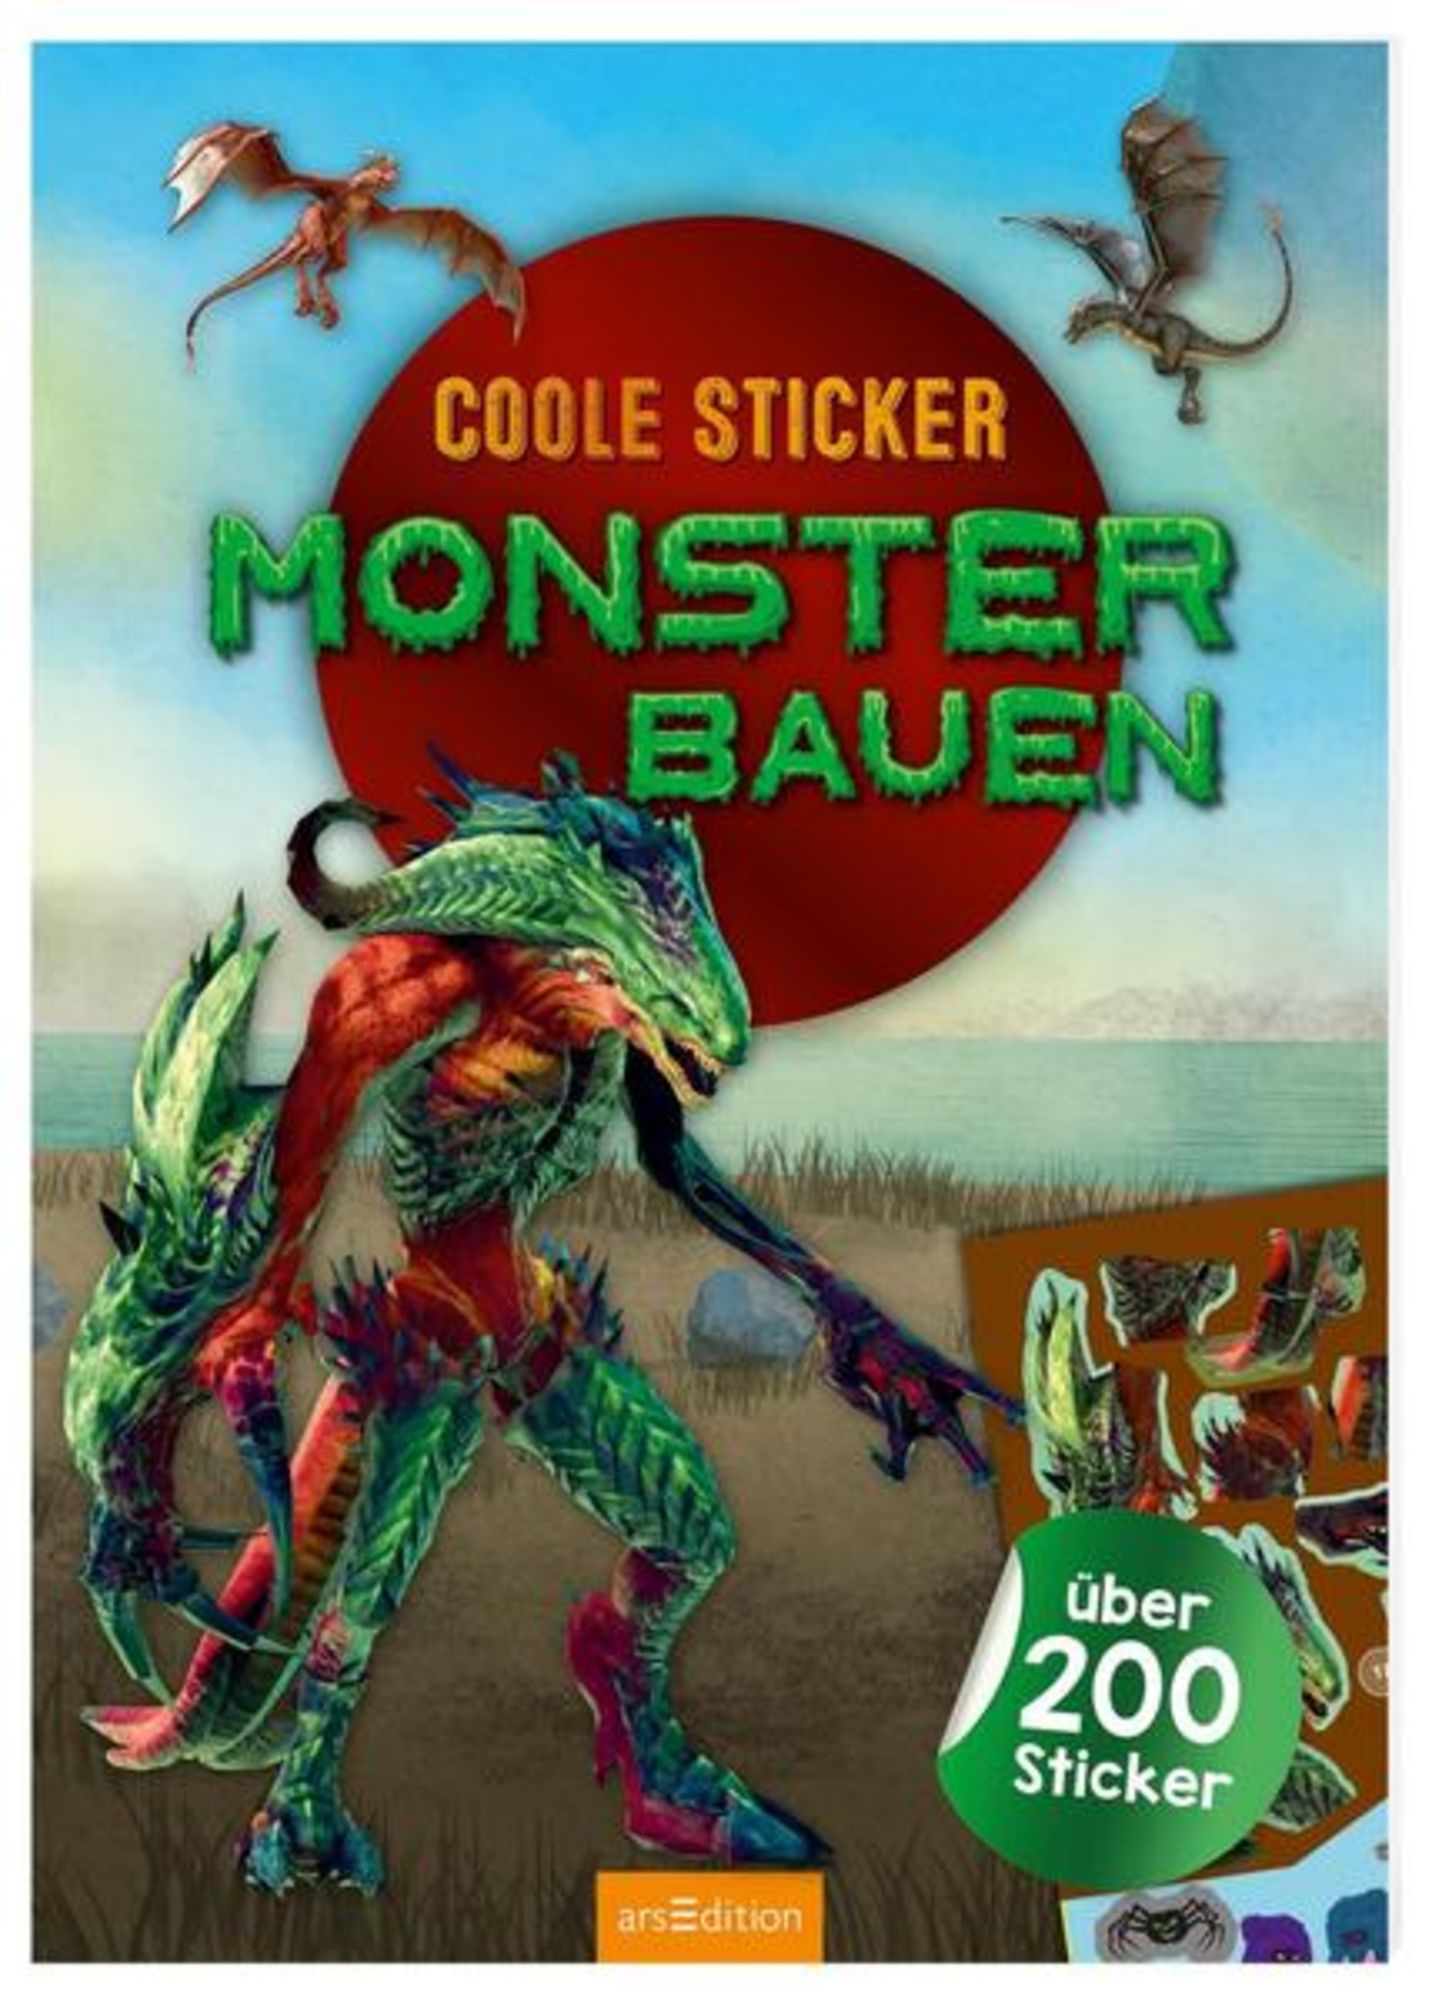 https://images.thalia.media/-/BF2000-2000/0081878fffd6475d8c30feb9599e5d66/coole-sticker-monster-bauen-taschenbuch.jpeg